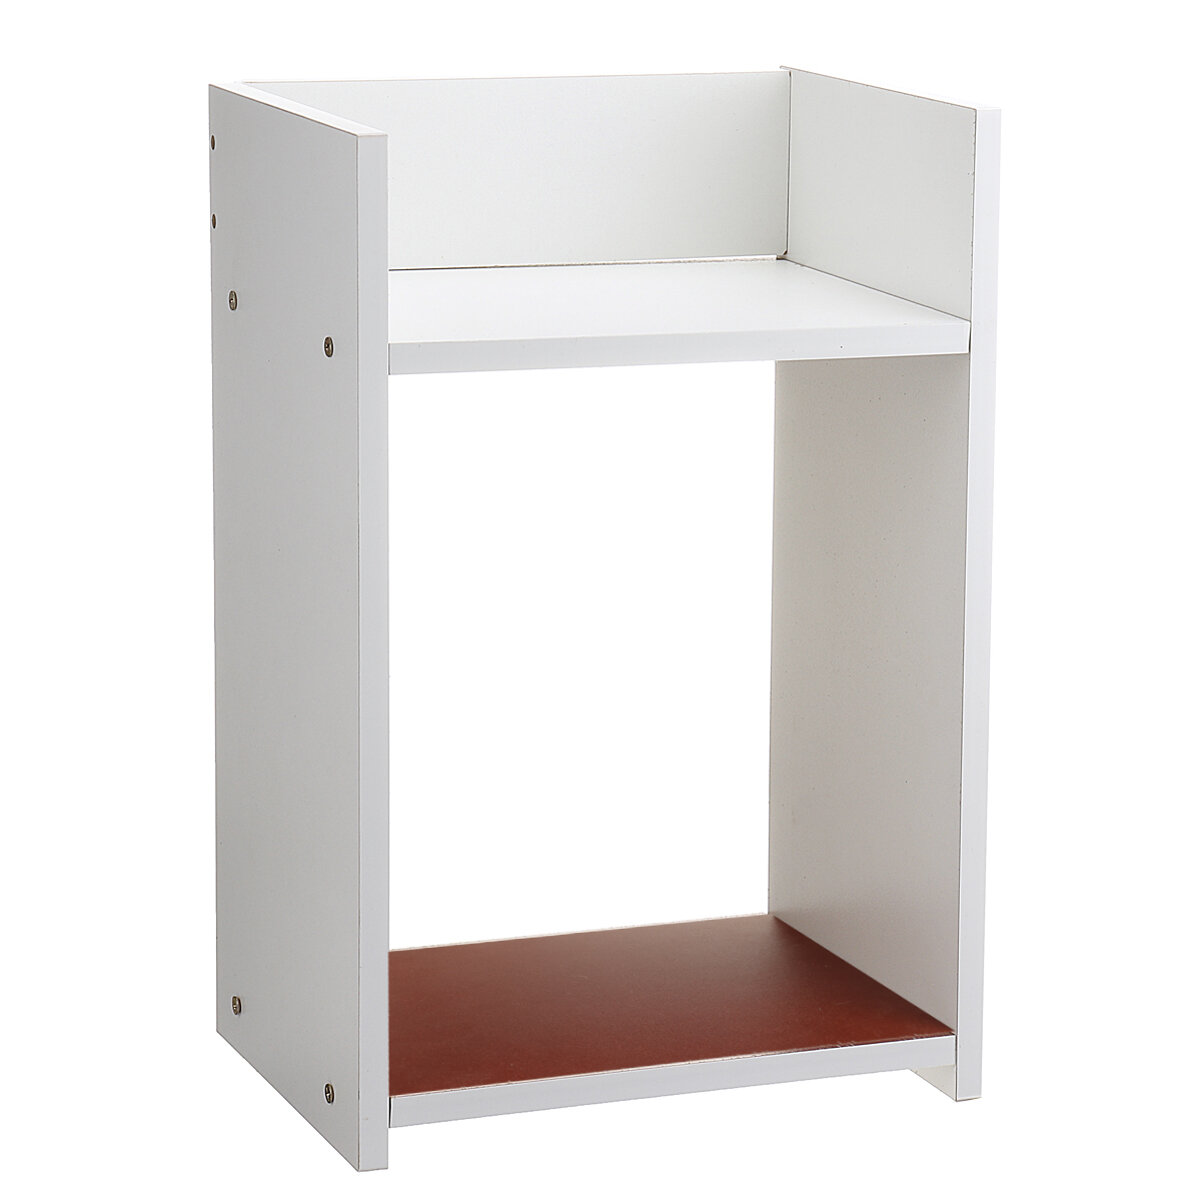 Assembled Storage Cabinet Wooden Storage Bedside Cabinet White Bedroom Locker for Home Office